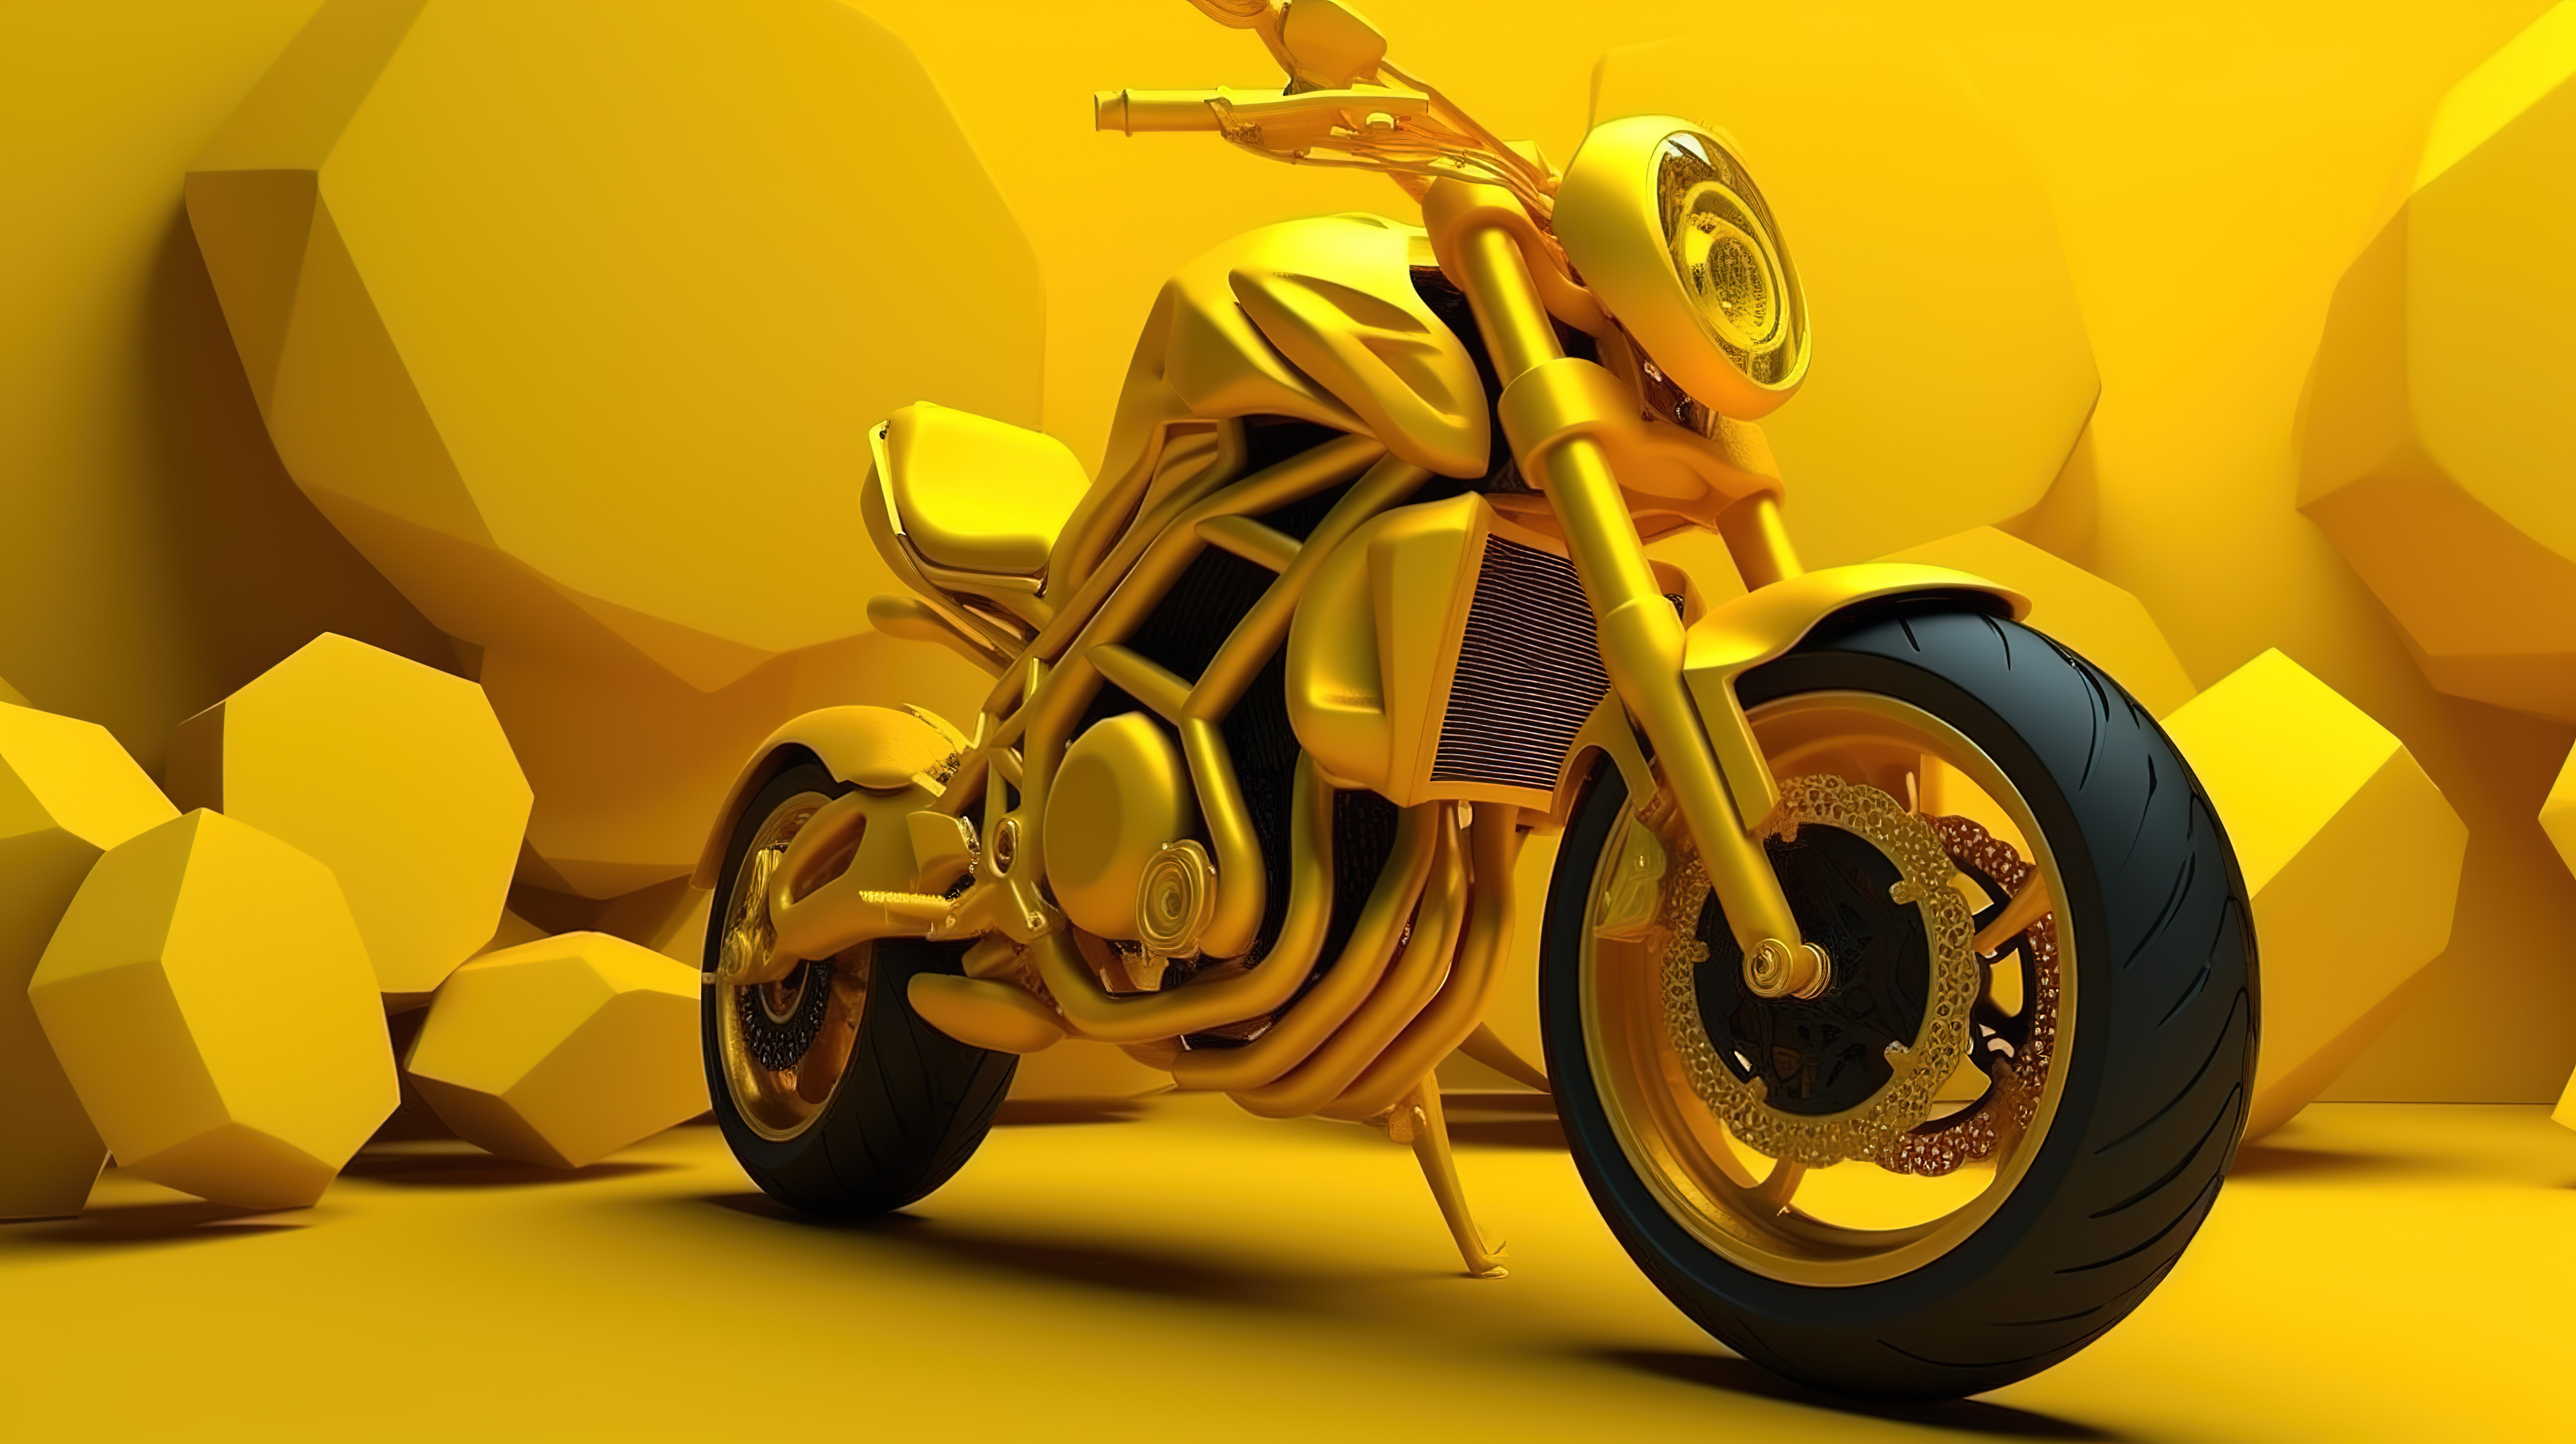 充满活力的 3D 黄色摩托车在引人注目的紫色背景上具有令人惊叹的后轮动态图片